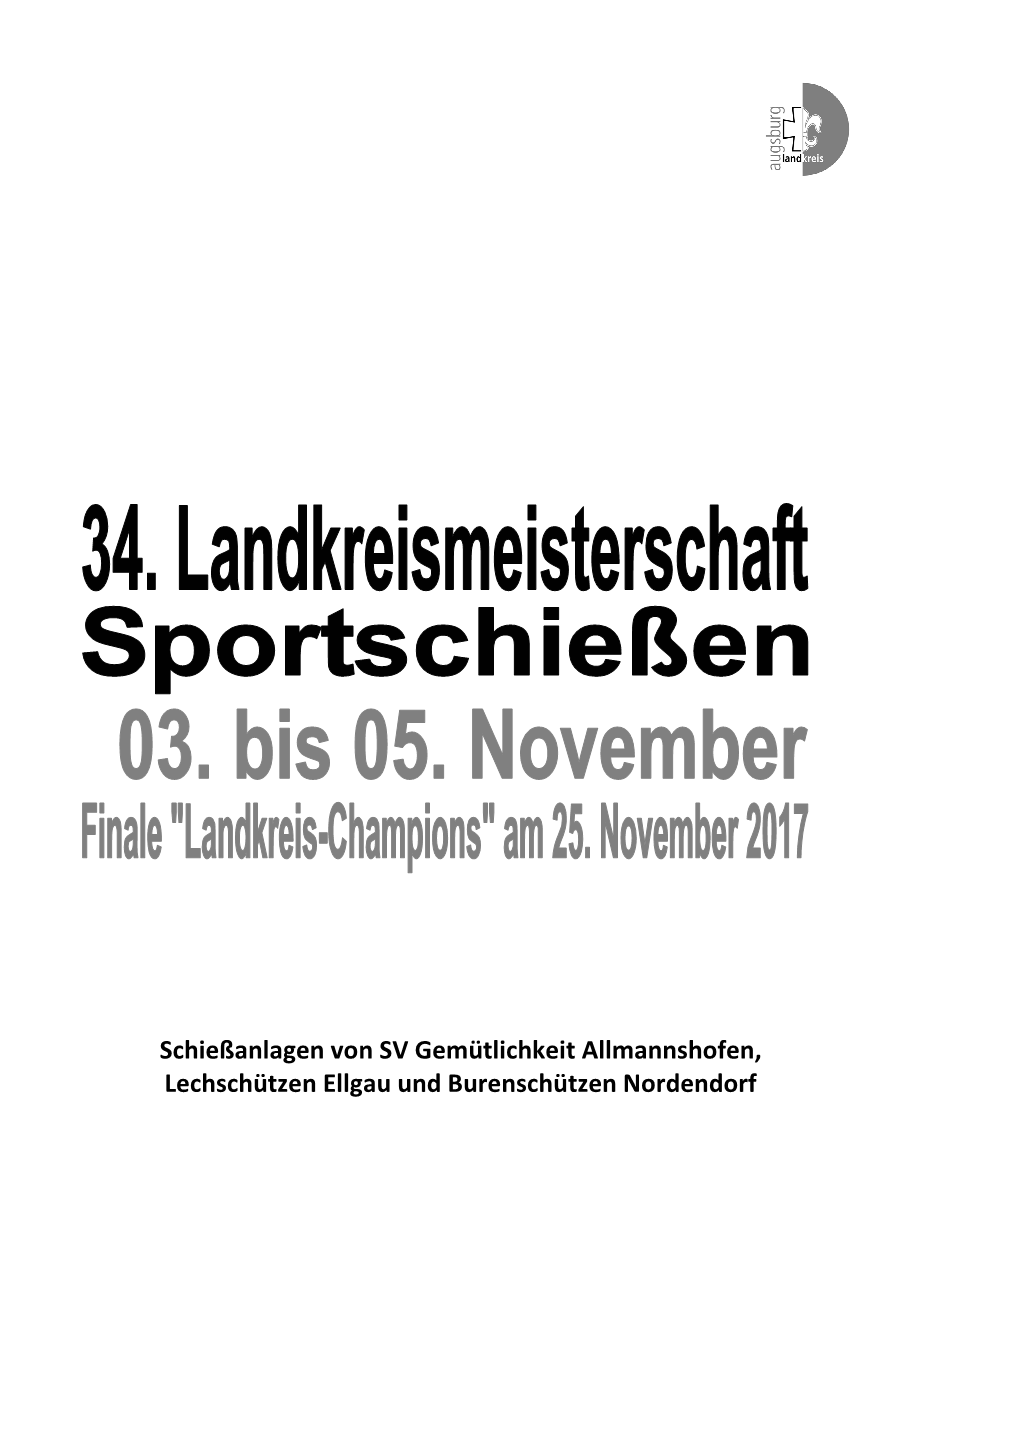 Schießanlagen Von SV Gemütlichkeit Allmannshofen, Lechschützen Ellgau Und Burenschützen Nordendorf